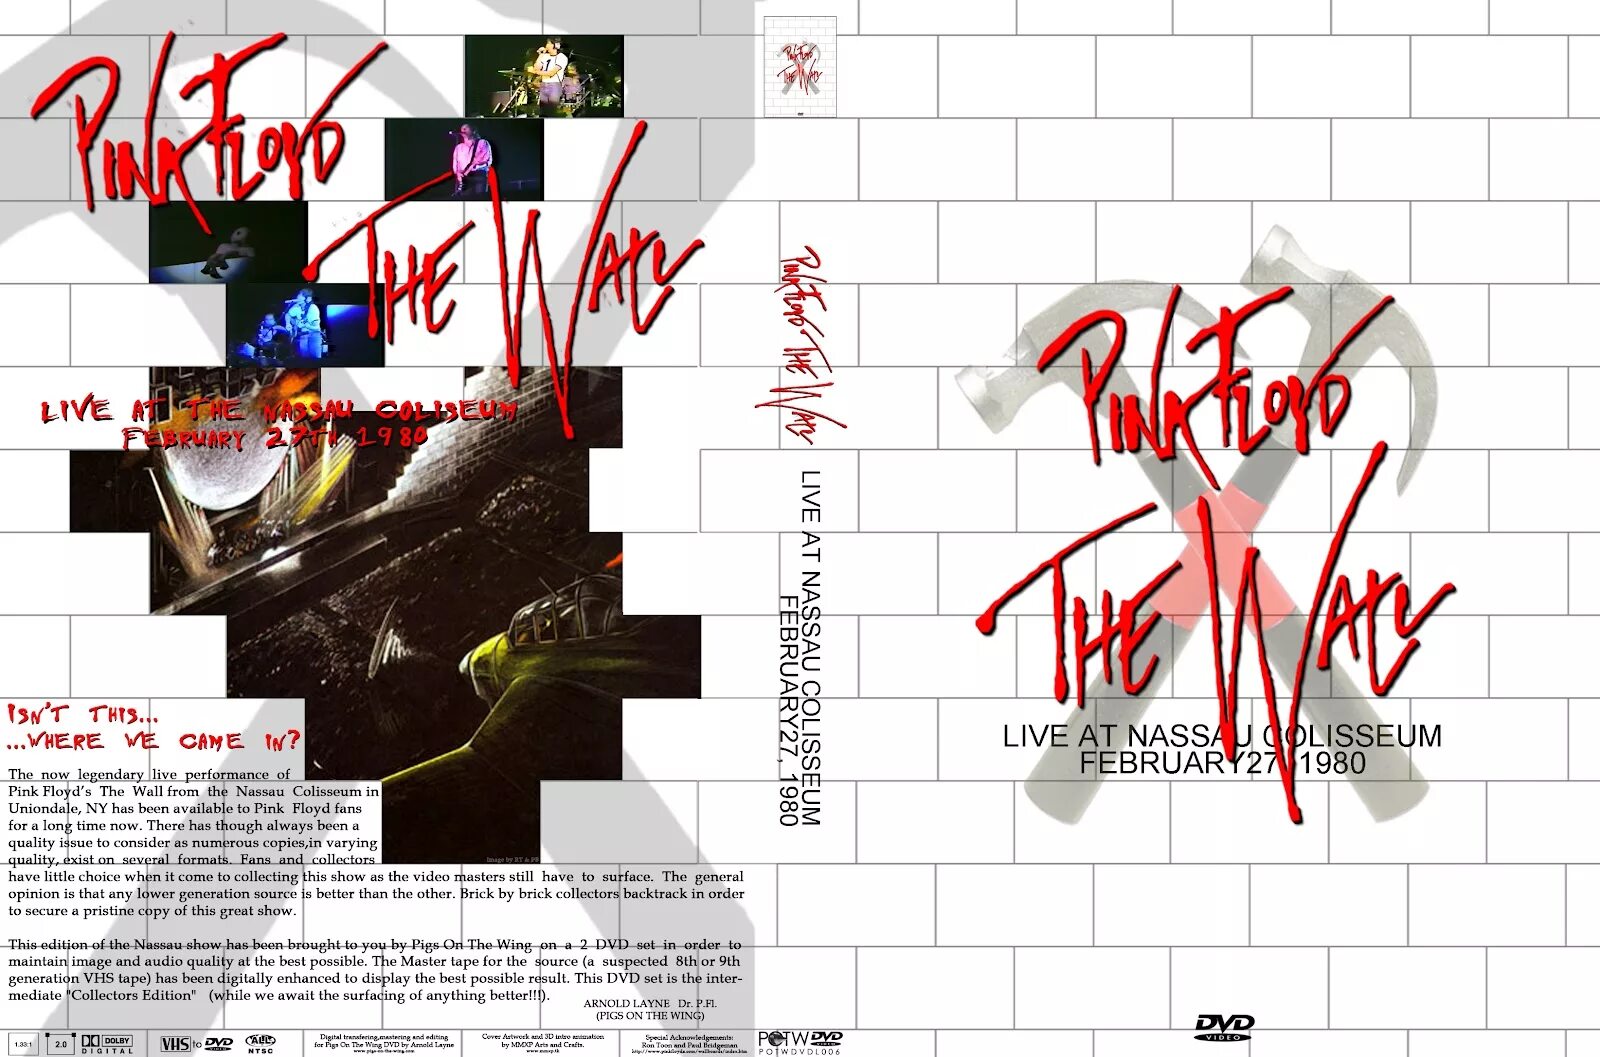 Альбом стена Пинк Флойд. Обложка CD Pink Floyd the Wall. Пинк Флойд стена обложка альбома. Pink Floyd DVD. Стен перевод песни